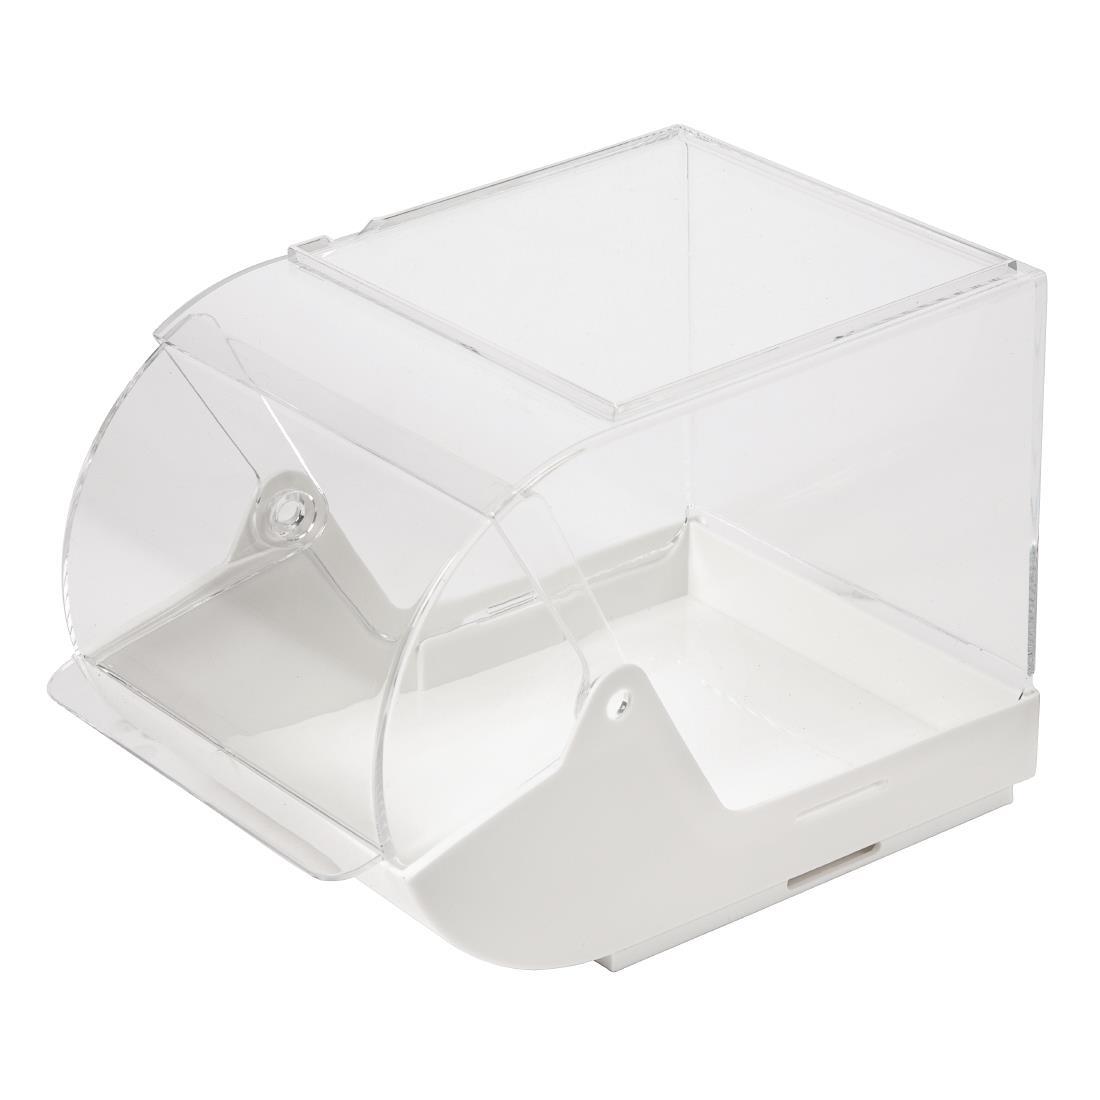 APS Sachet Dispenser Box White - GL627  - 2